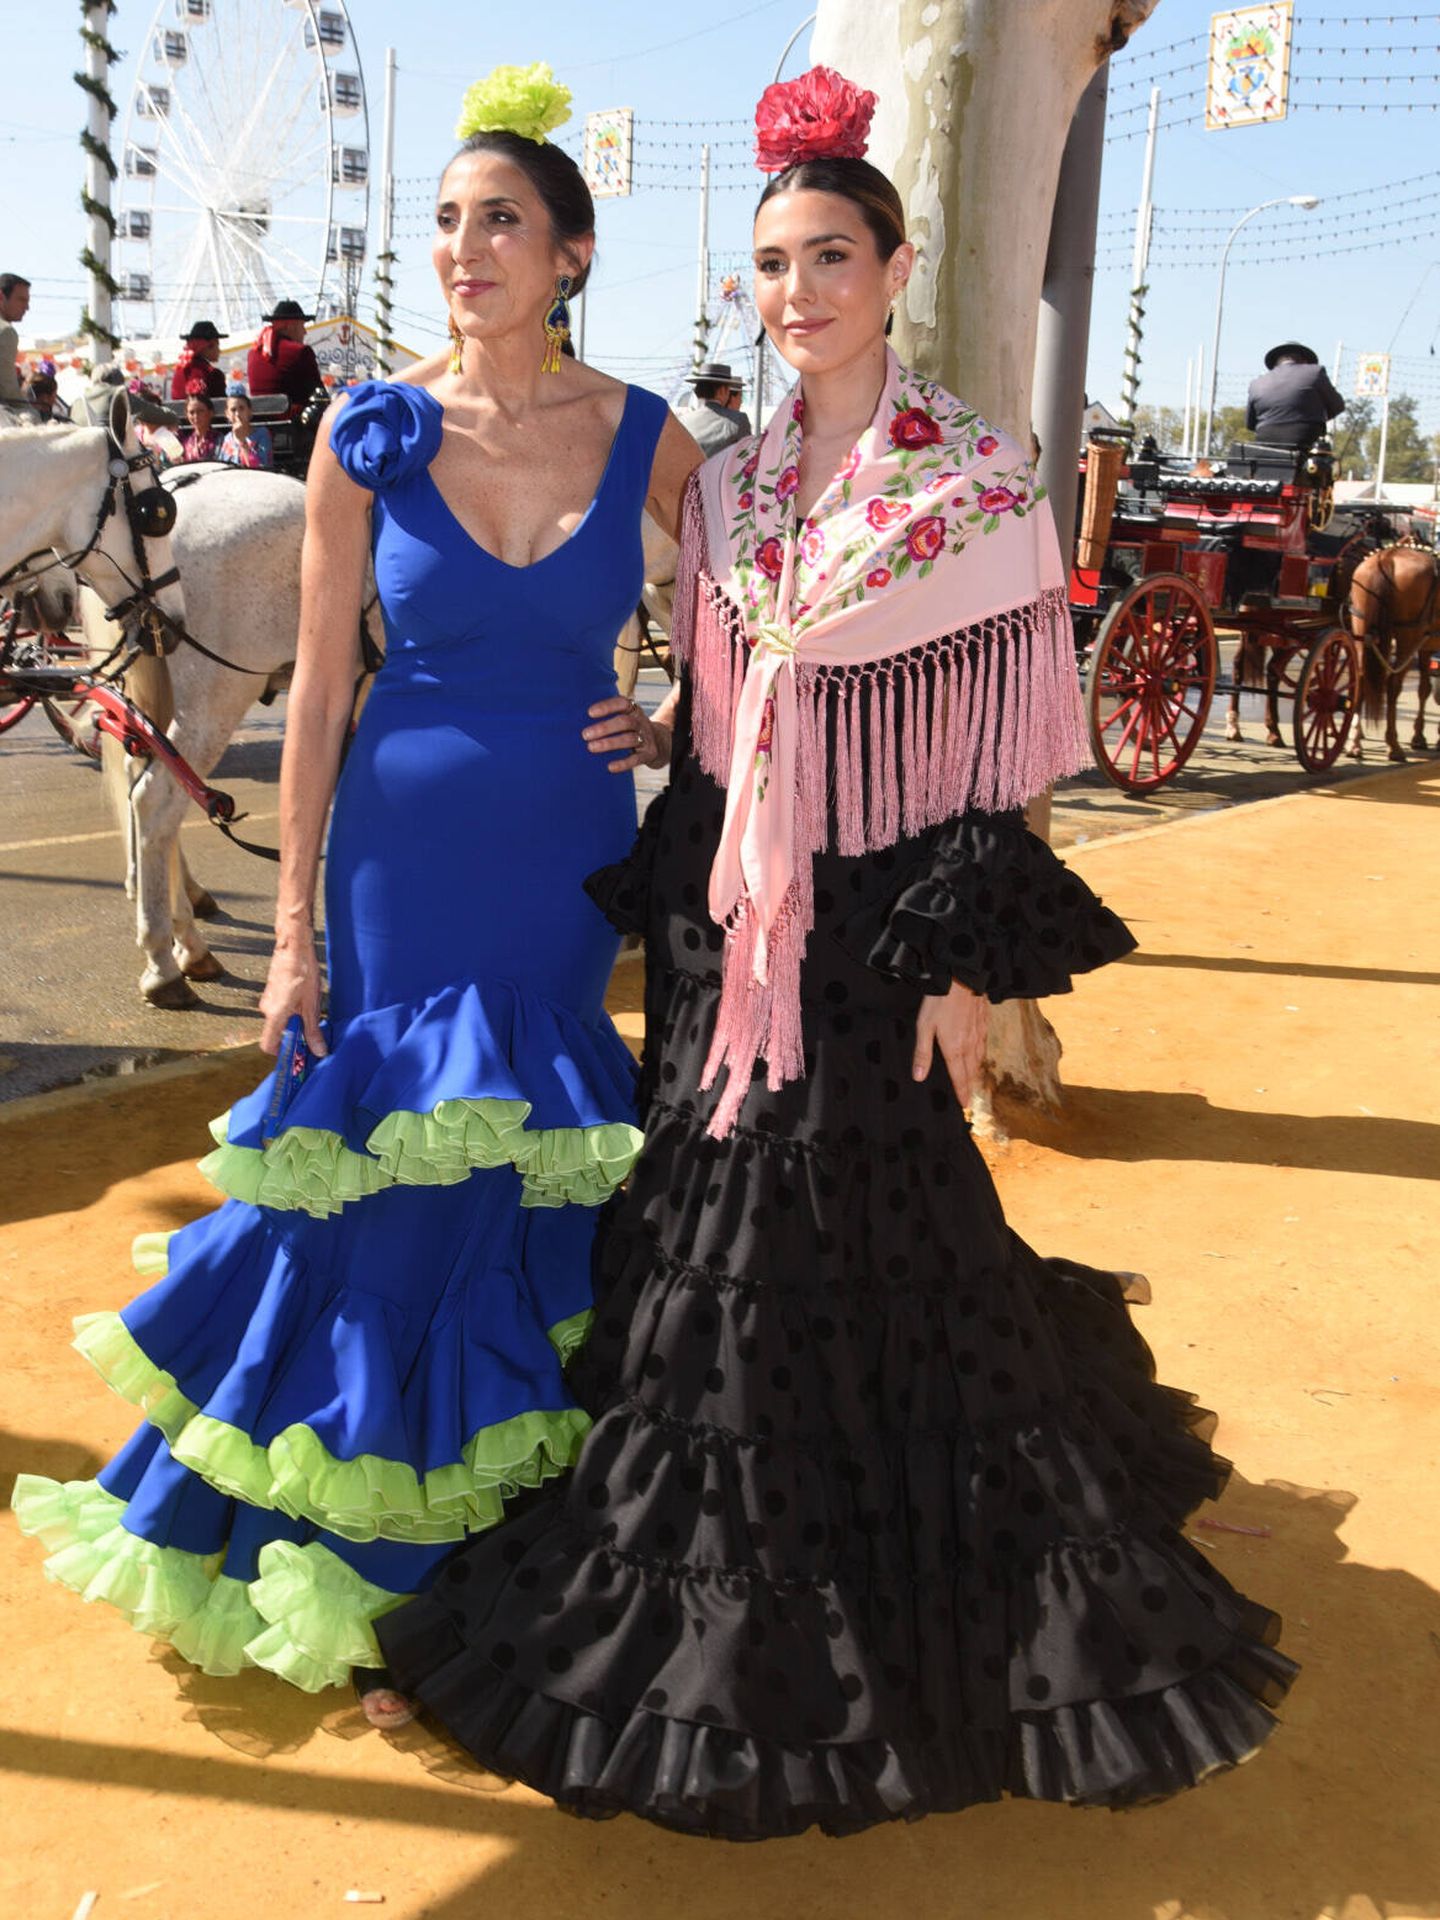 Paz Padilla y Anna Ferrer Padilla en la fiesta organizada por 'El Turronero' en la Feria de Abril de Sevilla. (Gtres)